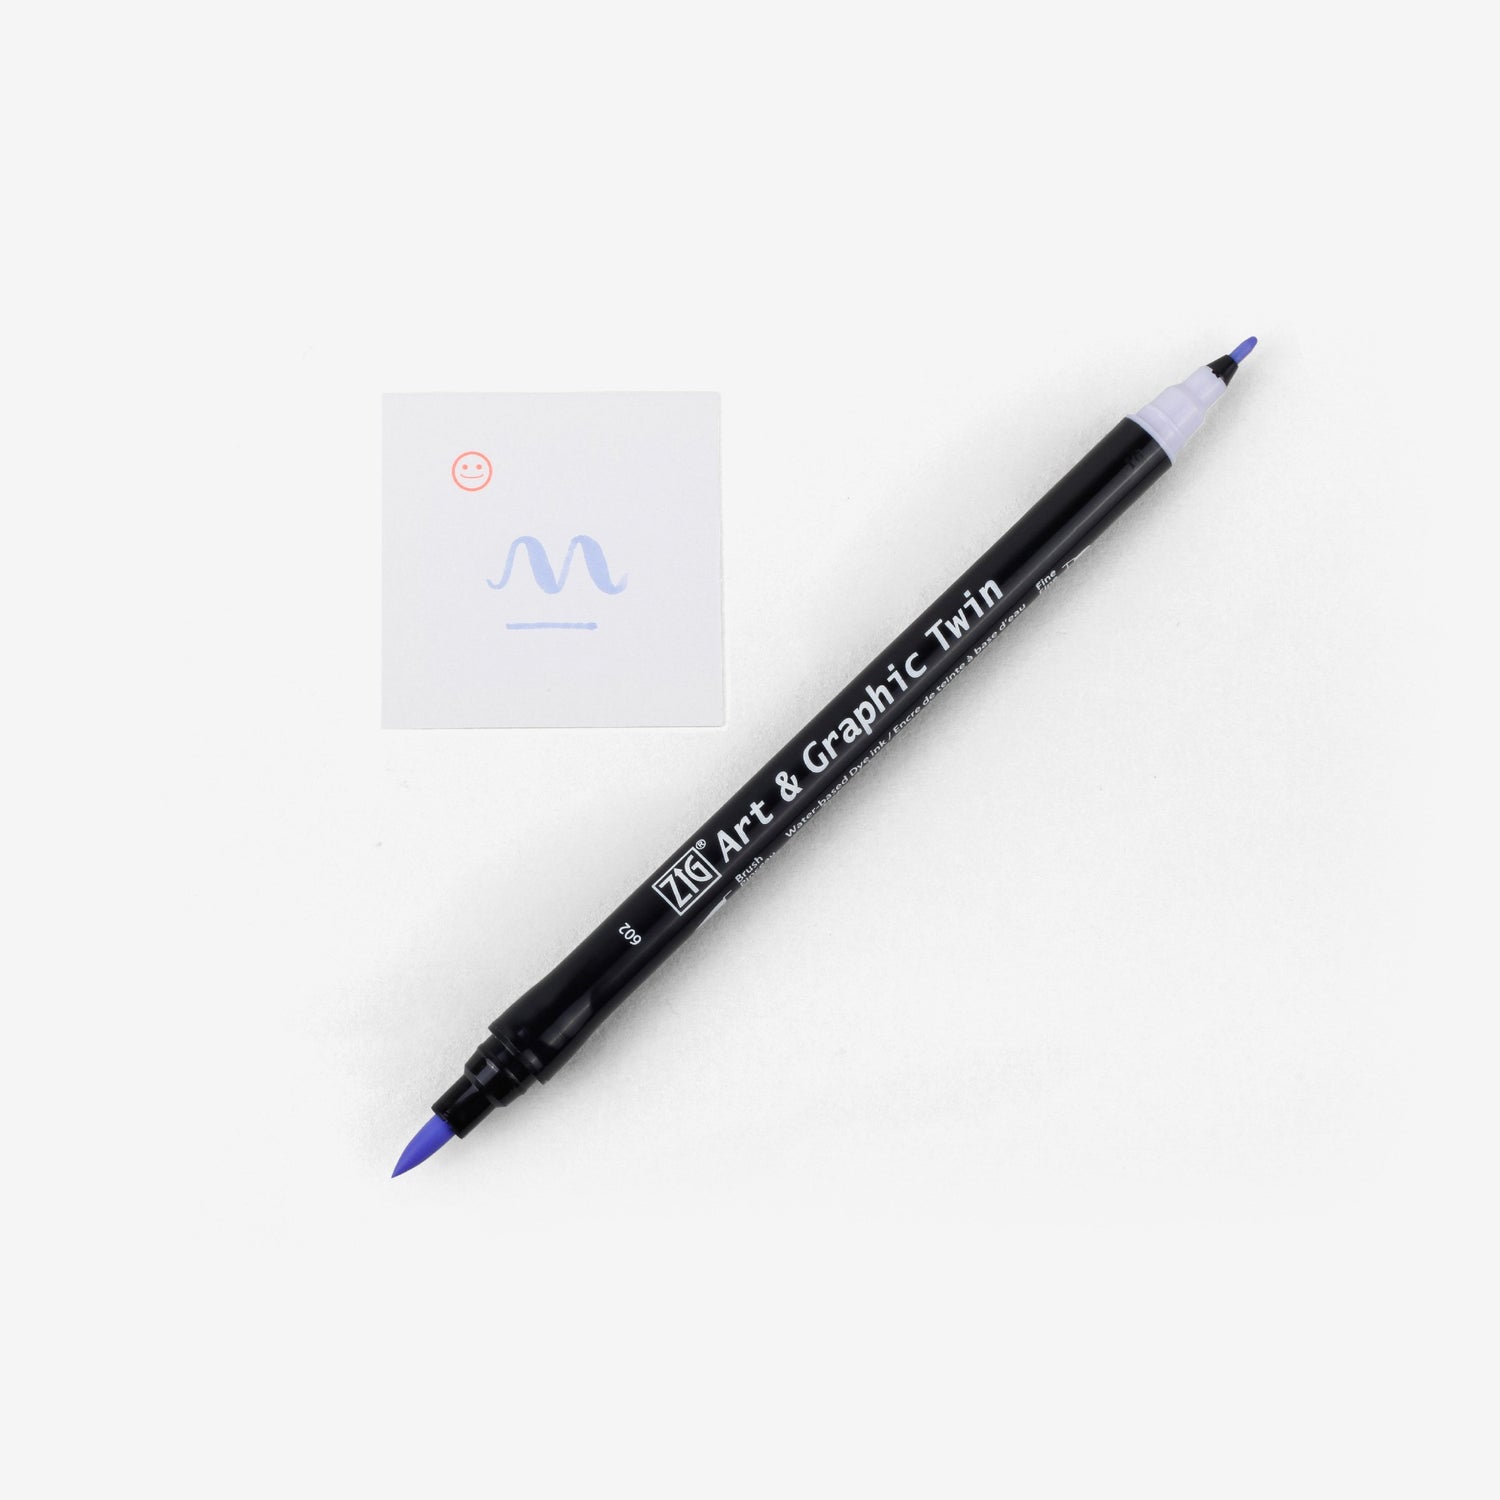 Kuretake Art & Graphic Twin Pen - English Lavender